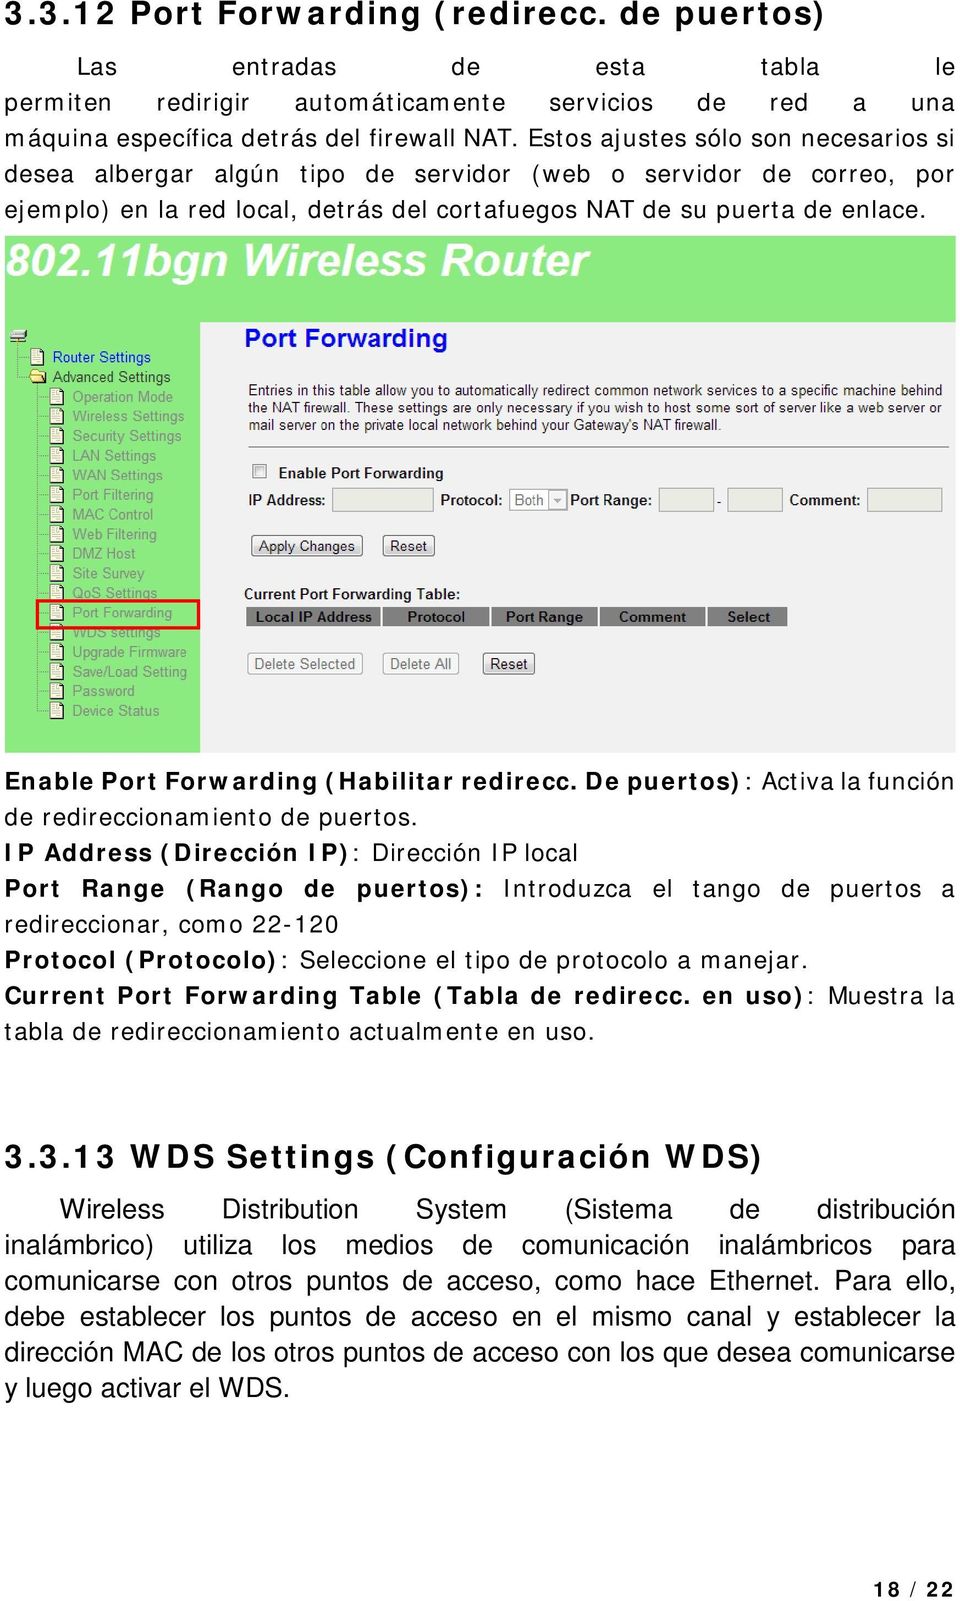 Enable Port Forwarding (Habilitar redirecc. De puertos): Activa la función de redireccionamiento de puertos.